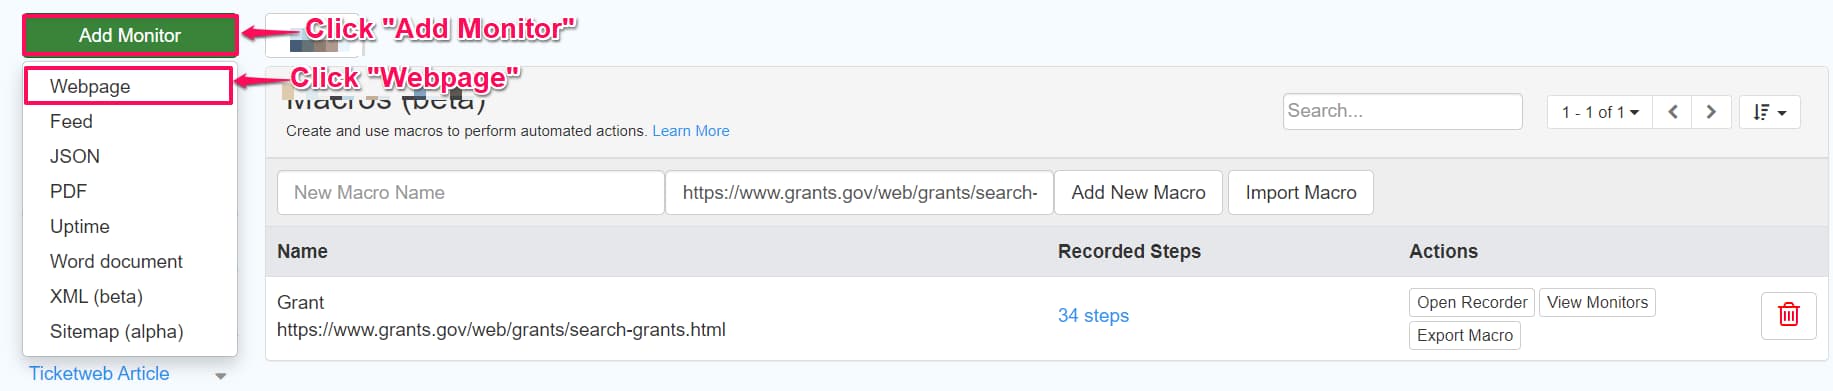 Track grants.gov using Distill